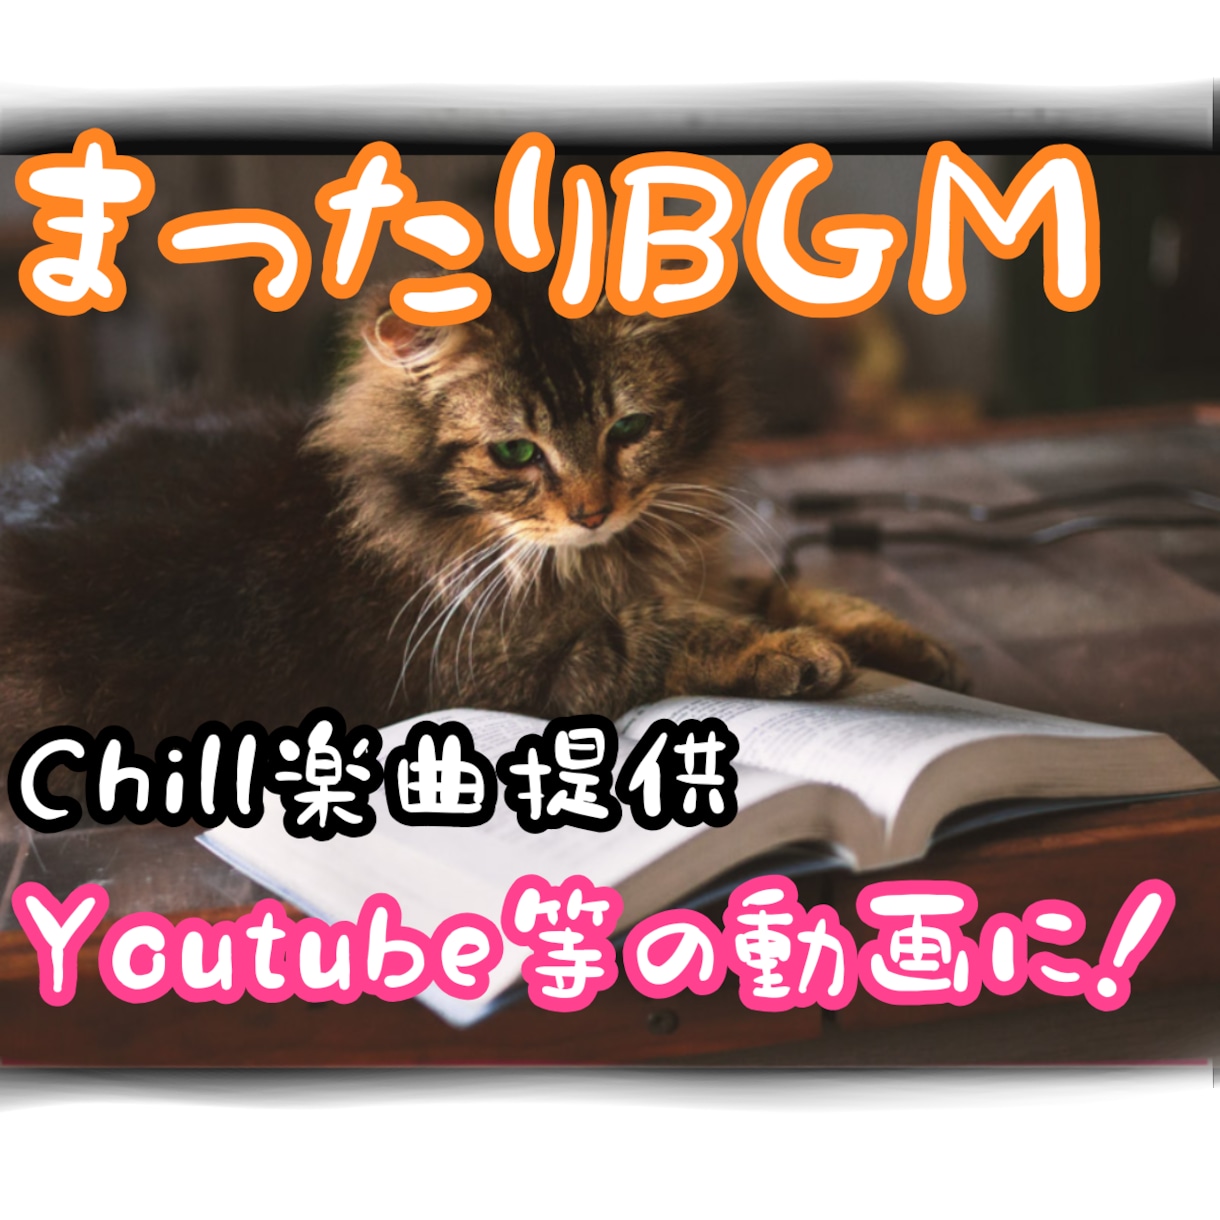 クリーンギターとアコギで落ち着くBGMを提供します YouTubeなどの動画作成に使える、まったりとしたBGM イメージ1